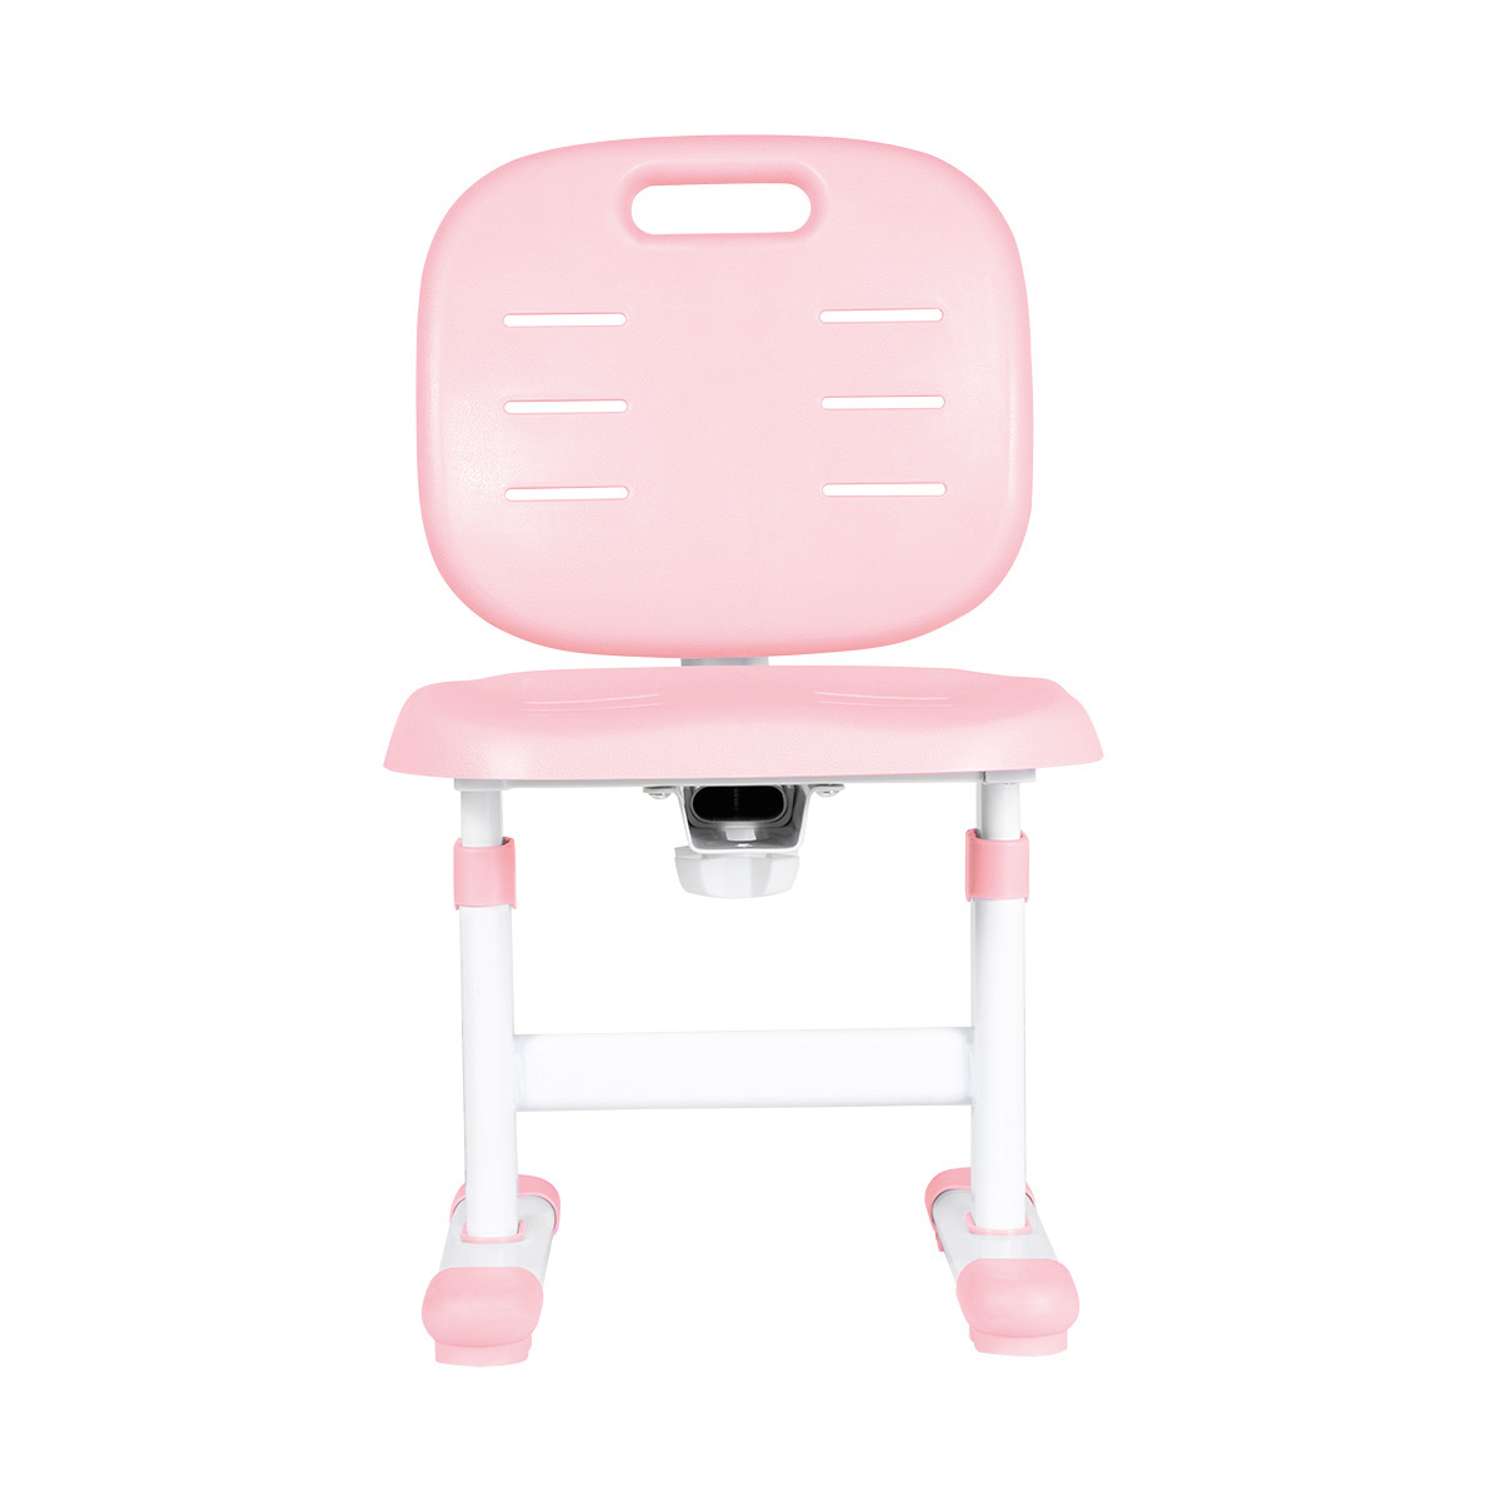 Растущий детский стул Anatomica Lux Pro розовый - фото 3